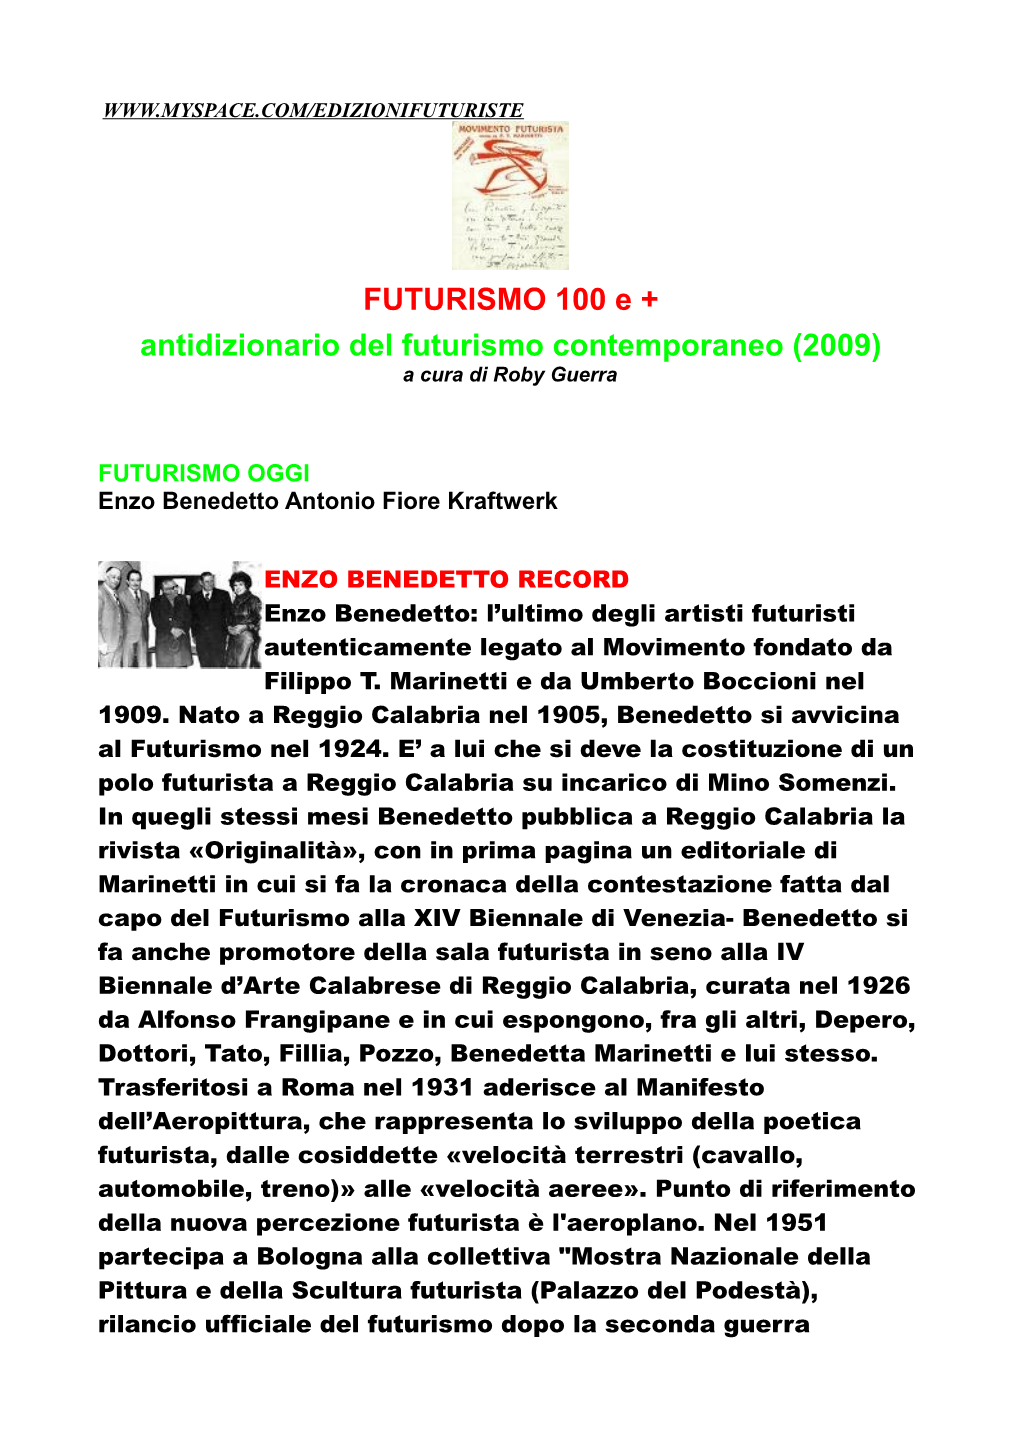 FUTURISMO 100 E + Antidizionario Del Futurismo Contemporaneo (2009) a Cura Di Roby Guerra